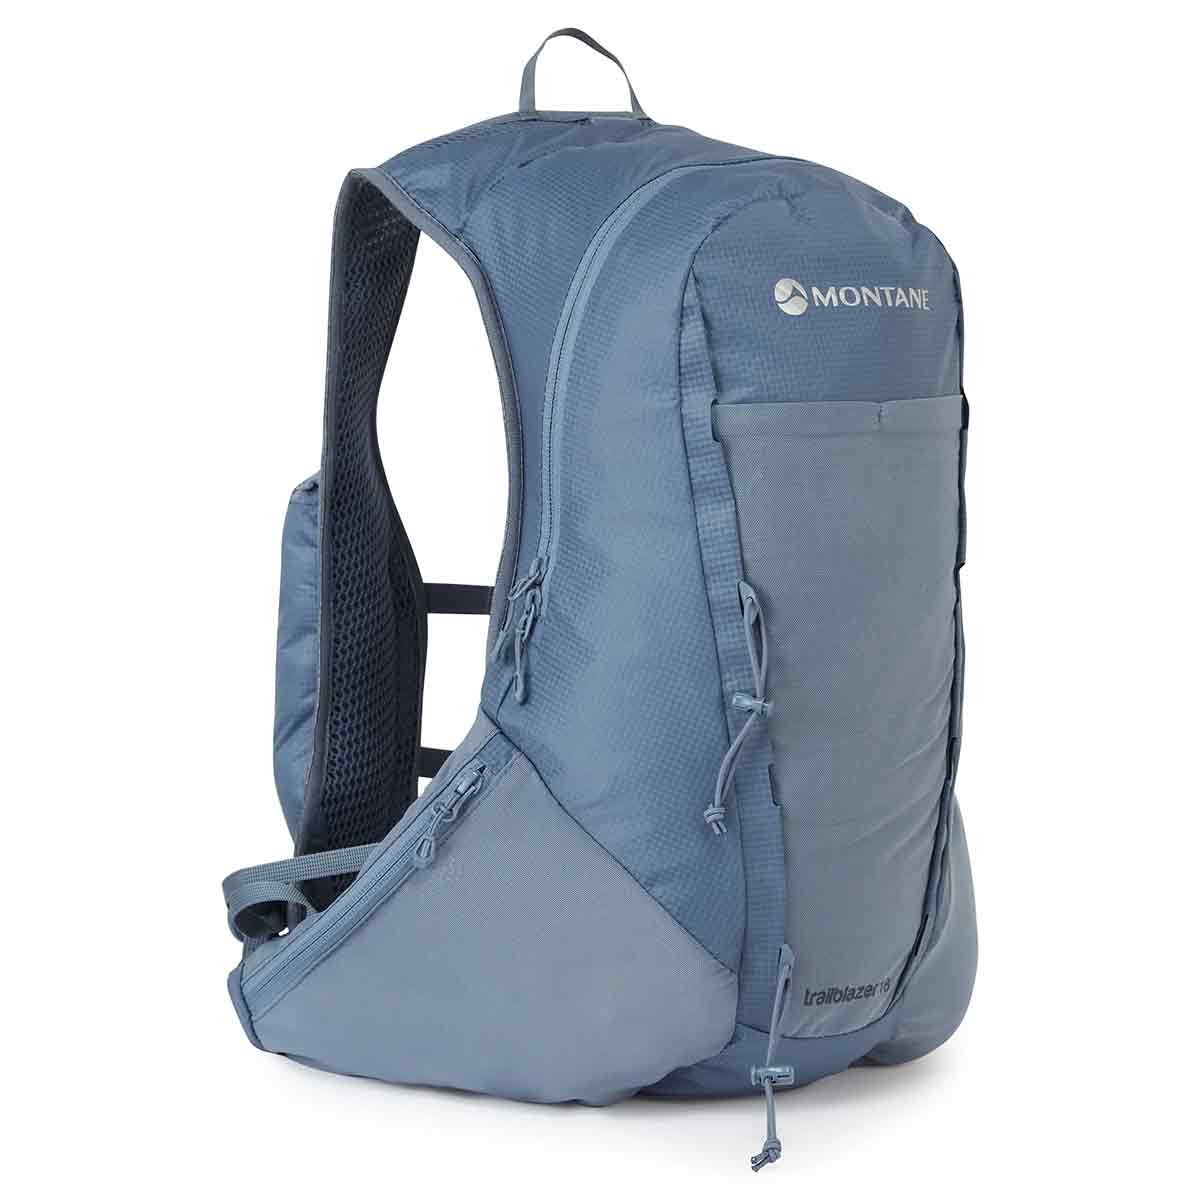 Montane Trailblazer 18L Backpack - John Bull Clothing